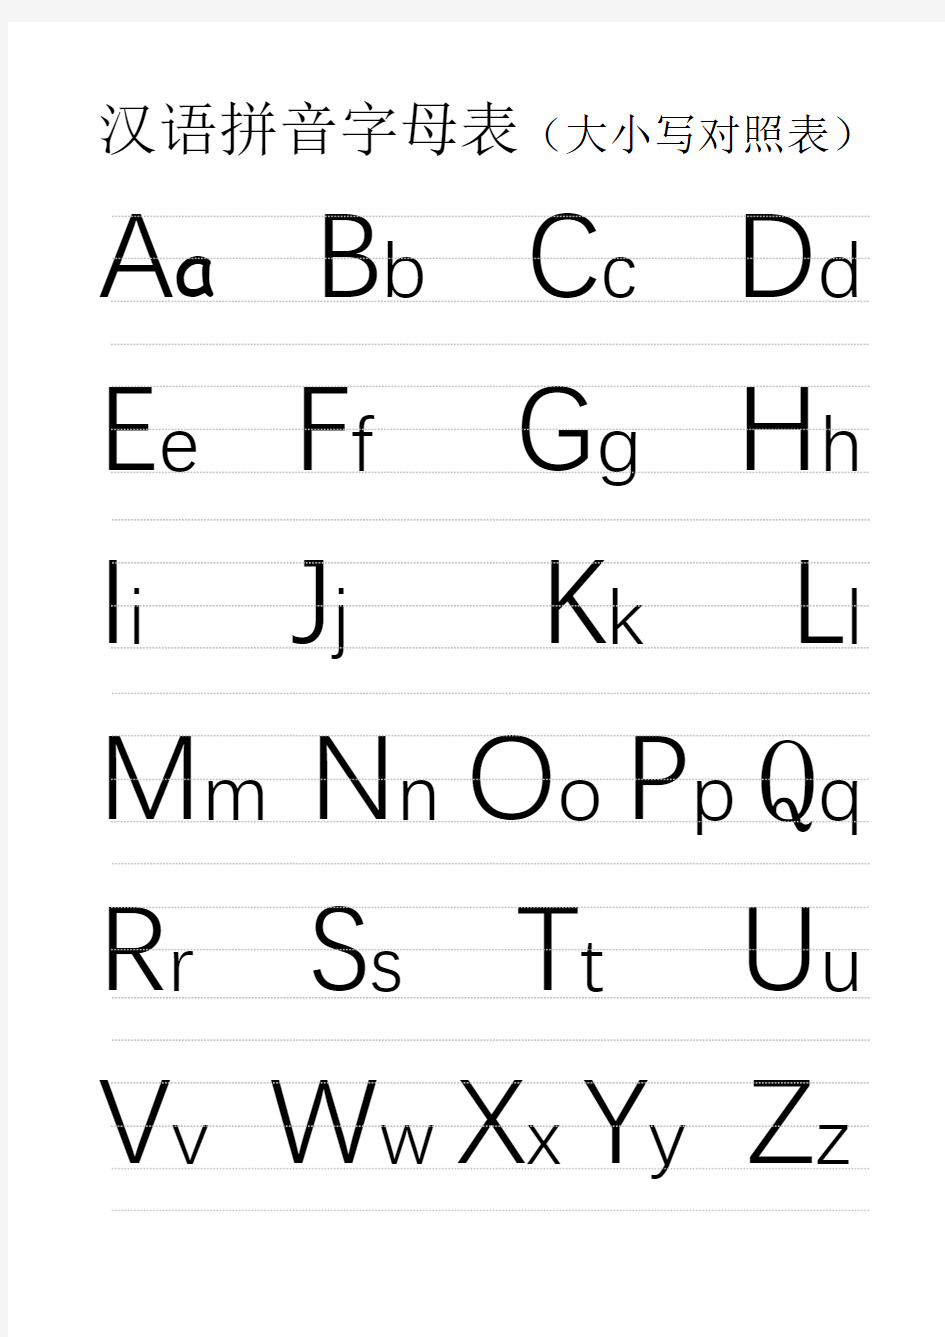 汉语拼音字母表(大小写对应,A4打印版)